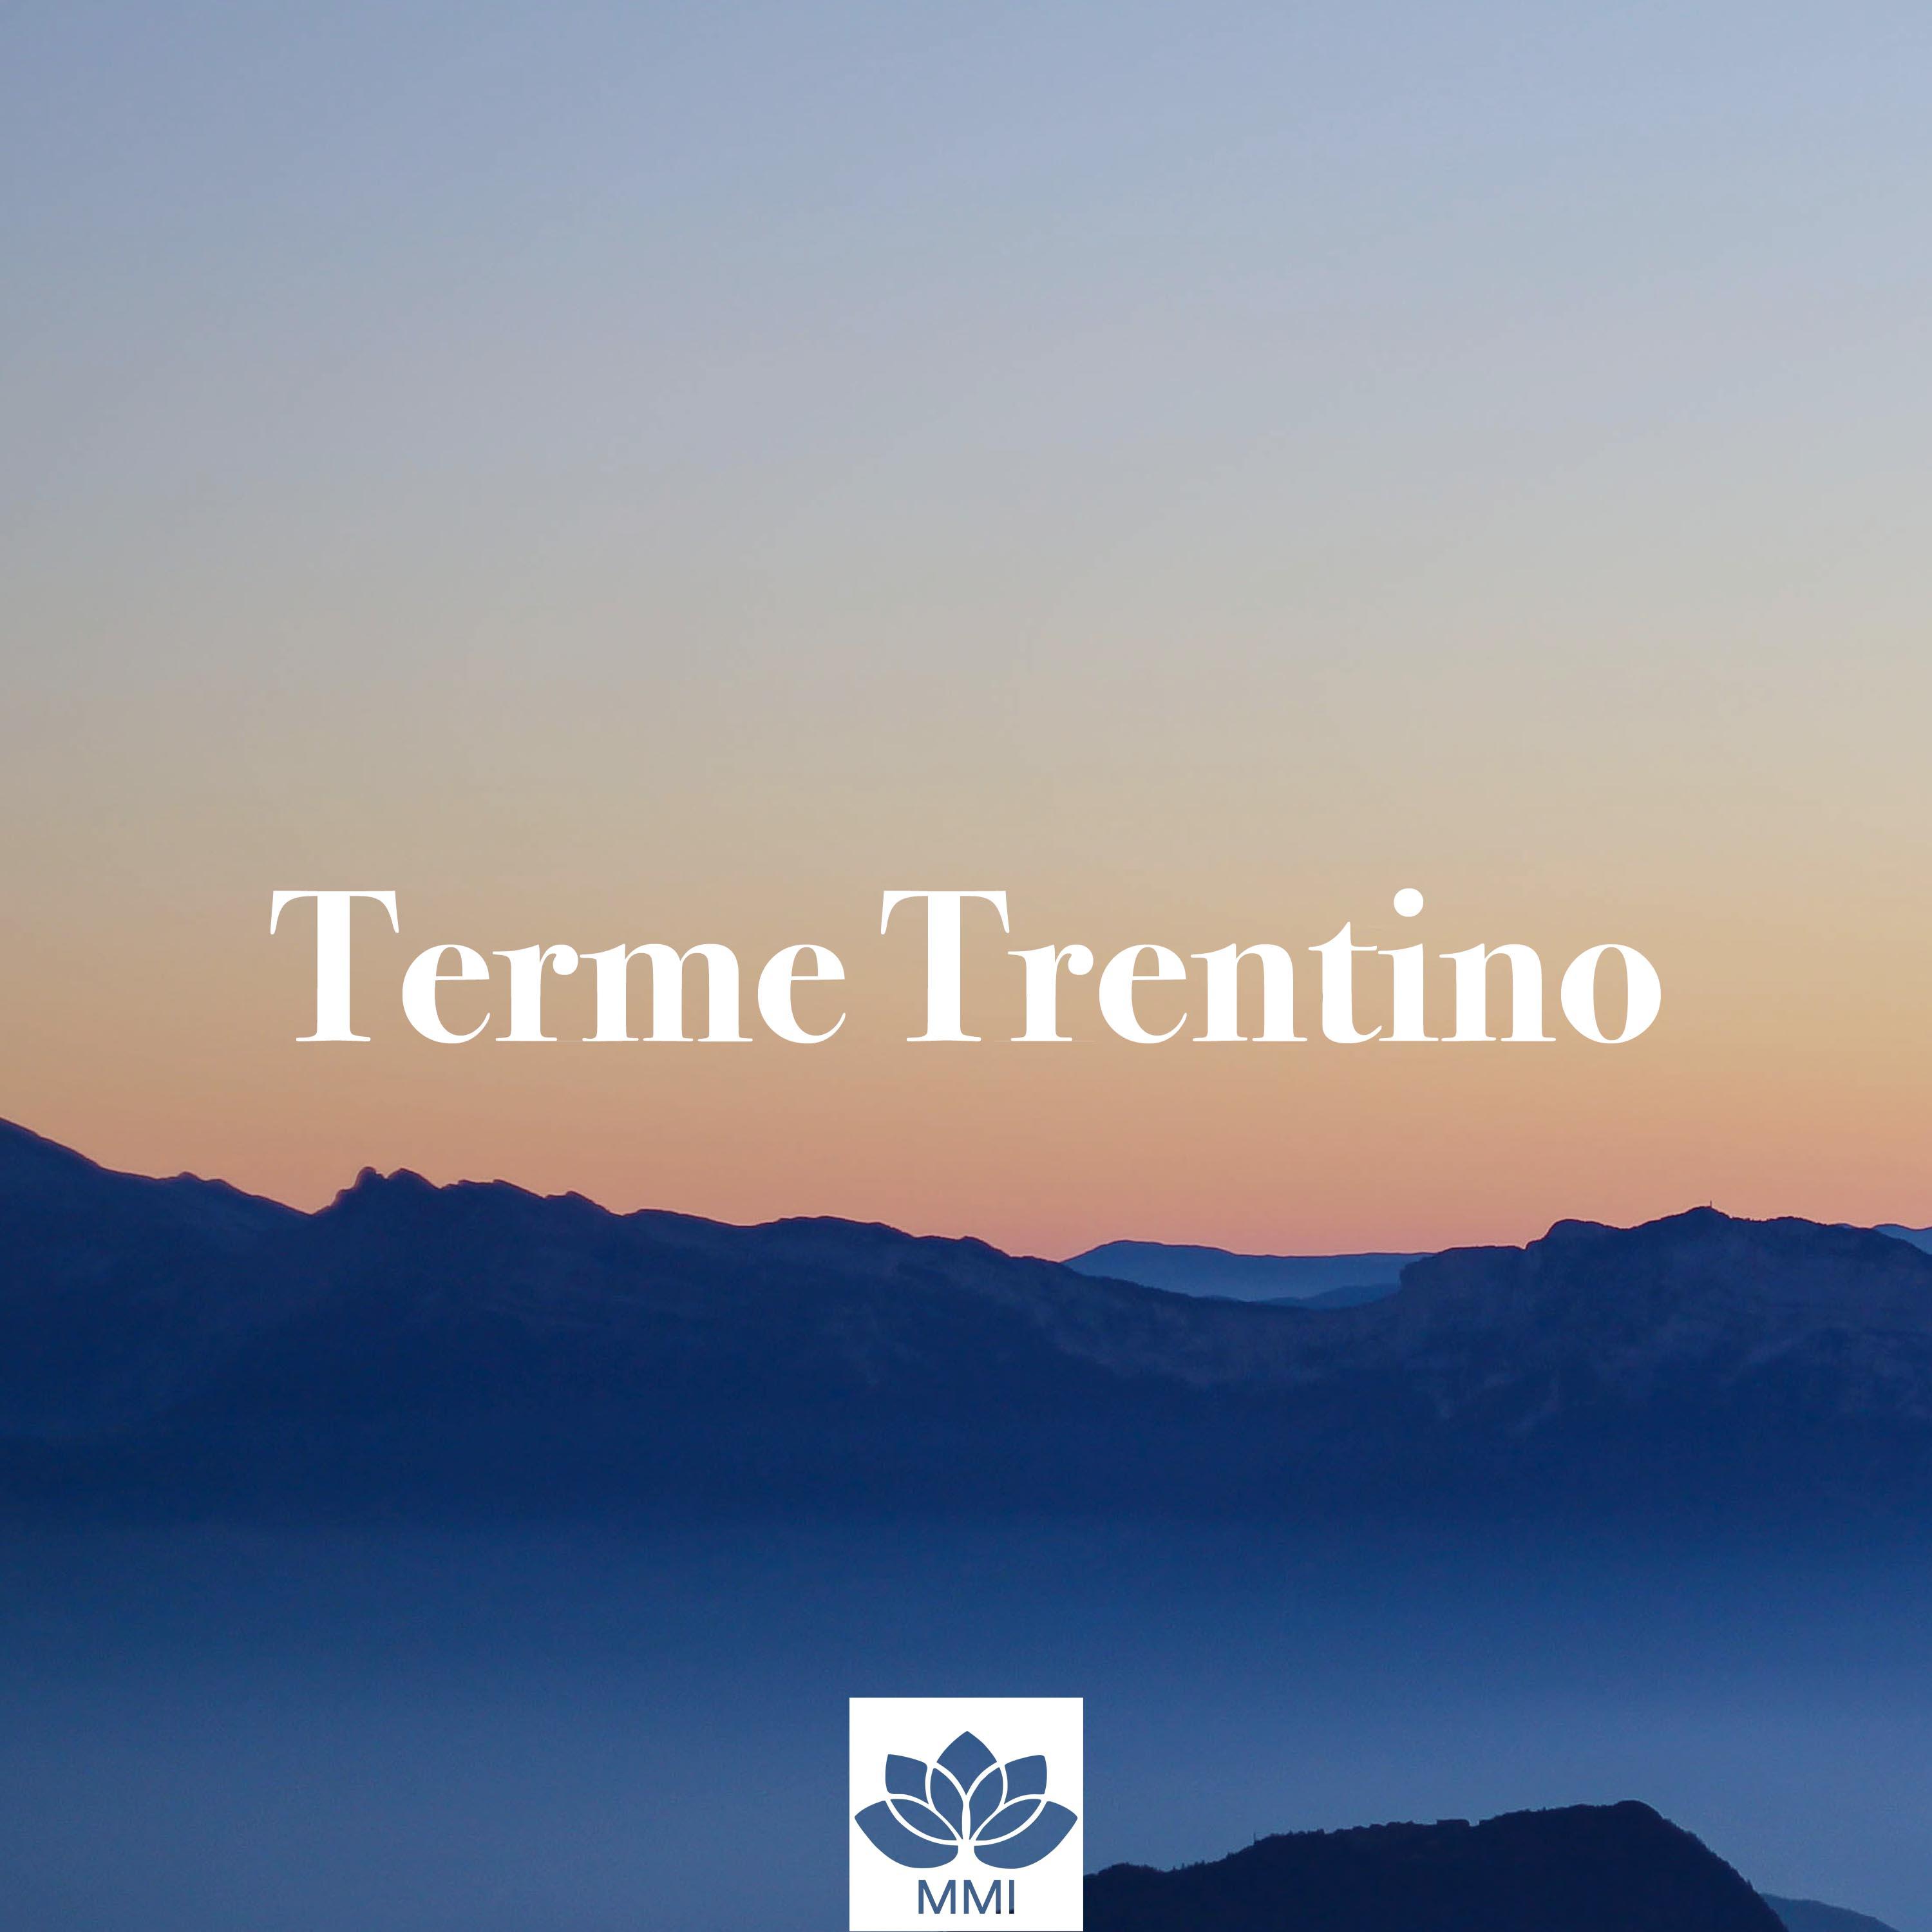 Terme Trentino: Musica Strumentale Zen di Sottofondo, Suoni della Natura, Musica di Meditazione